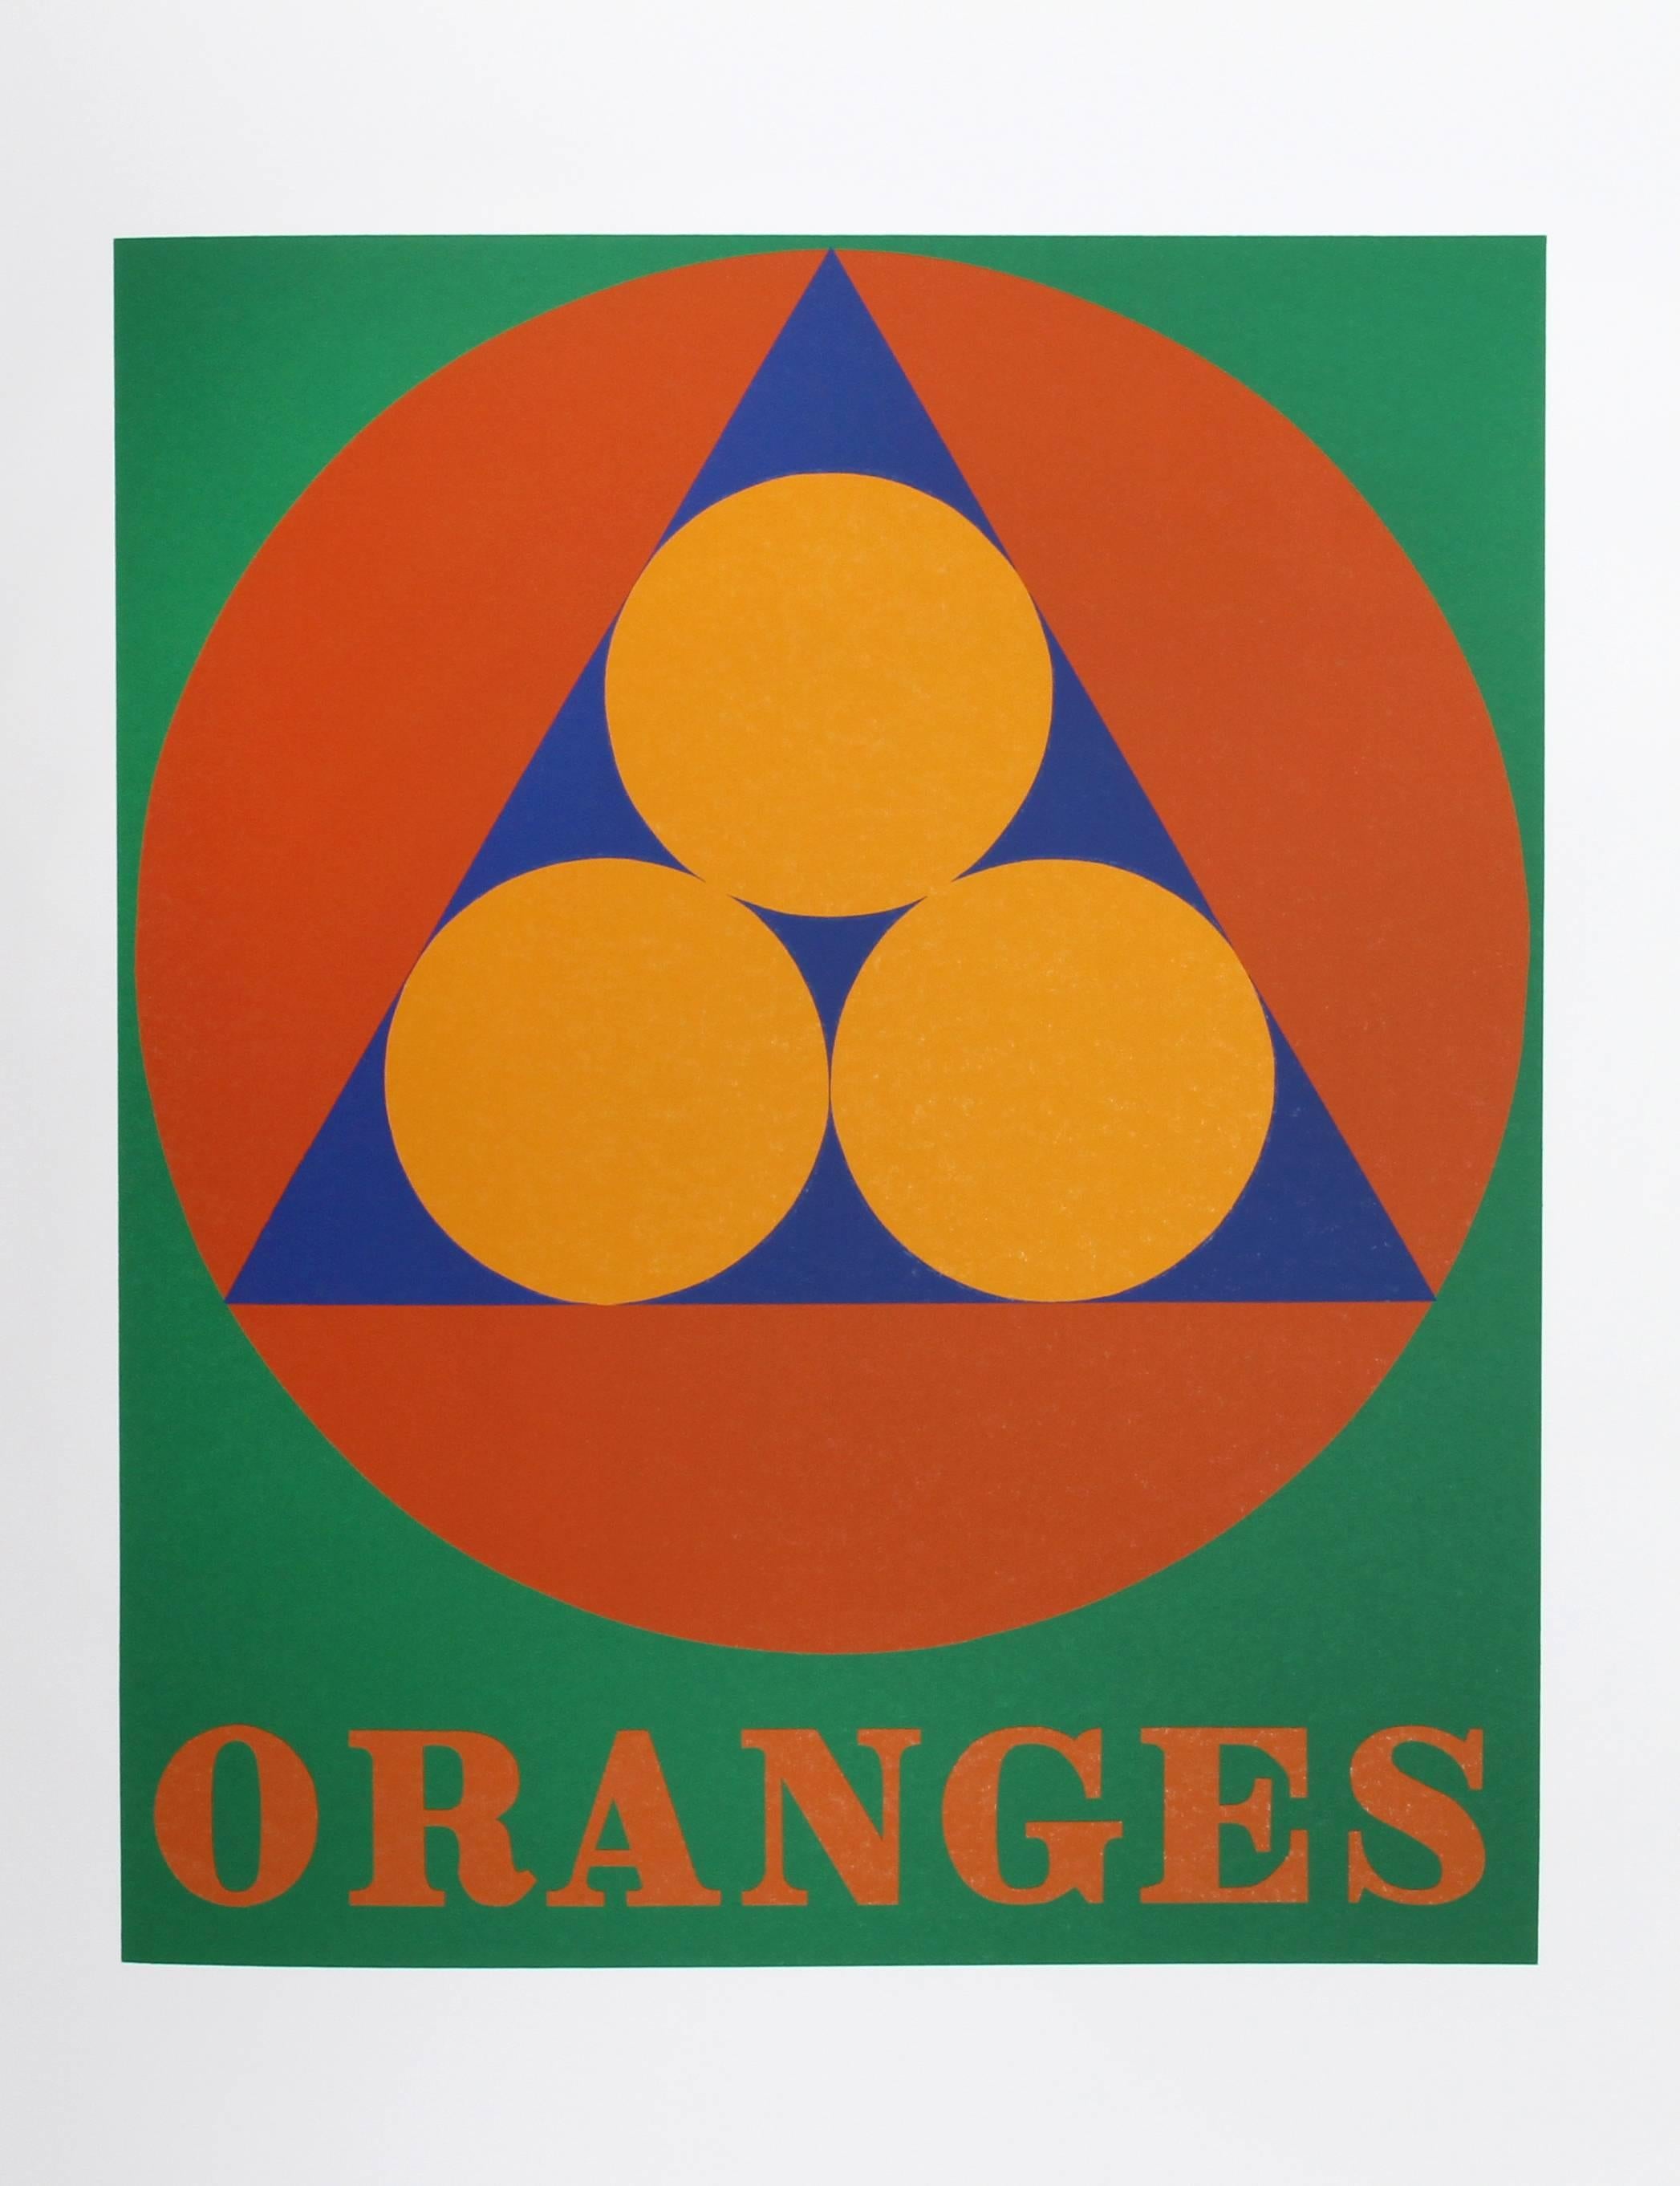 Künstler: Robert Indiana, Amerikaner (1928 - 2018)
Titel: Orangen aus dem American Dream Portfolio
Jahr: 1969 (1997)
Medium: Serigraphie
Auflagenhöhe: 395
Bildgröße: 16,75 x 14 Zoll
Größe: 22 Zoll x 17 Zoll (55,88 cm x 43,18 cm)

Gedruckt und